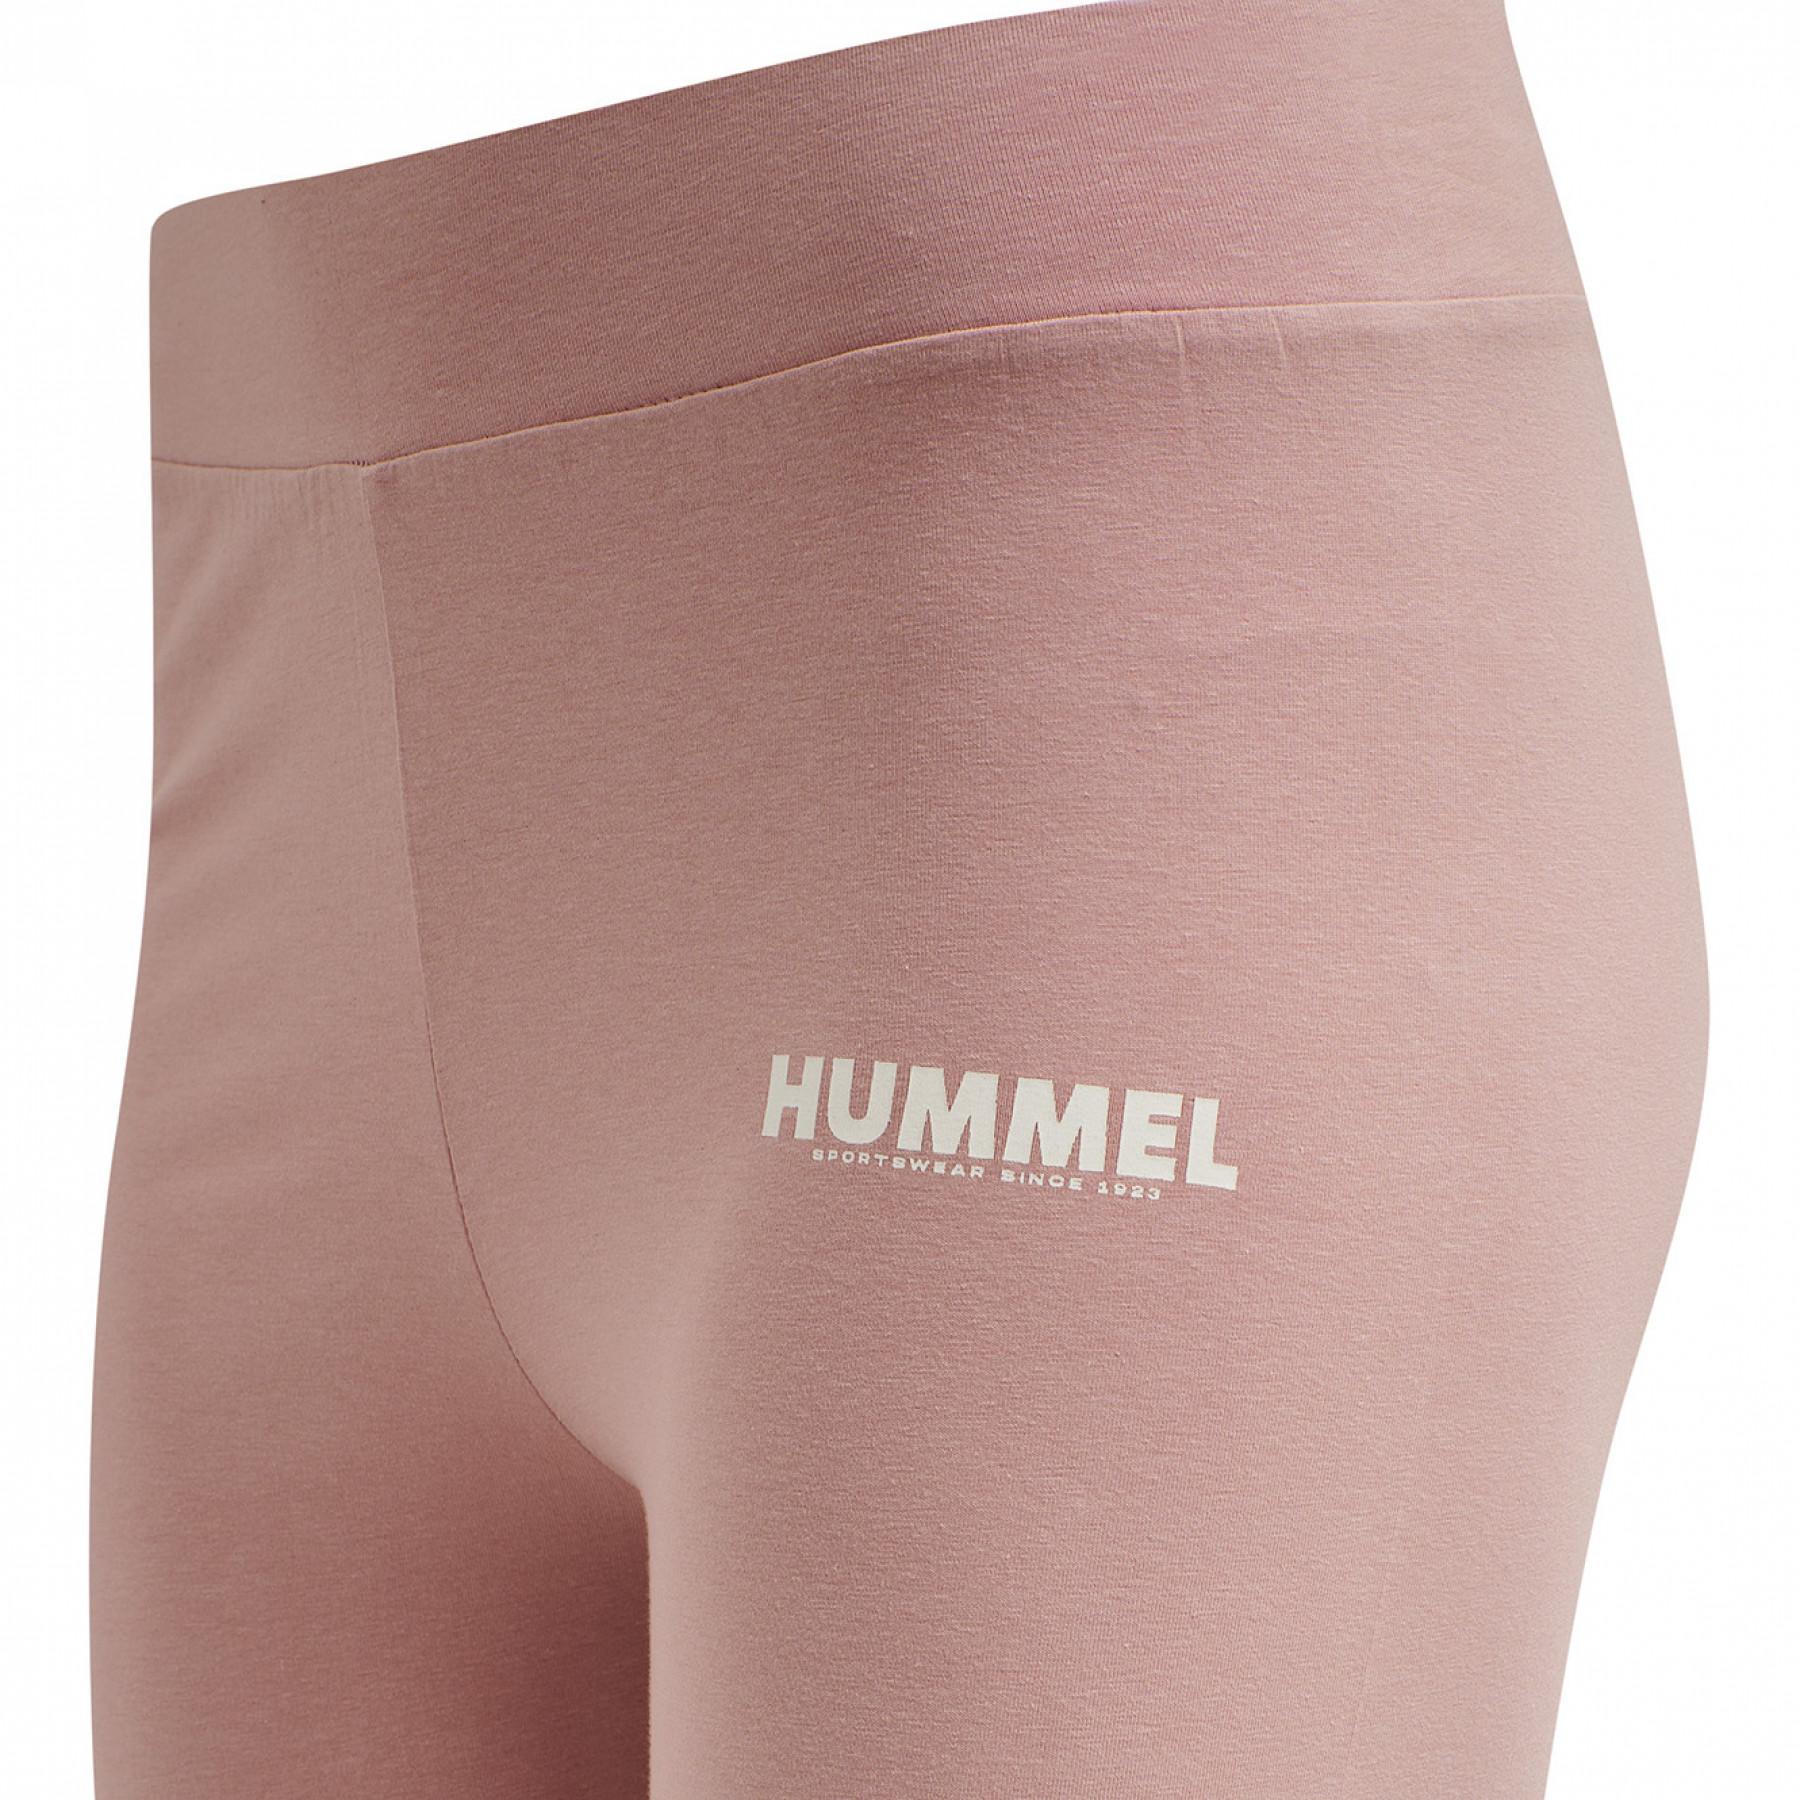 Women's high waist tights Hummel hmltif - Hummel - Brands - Handball wear